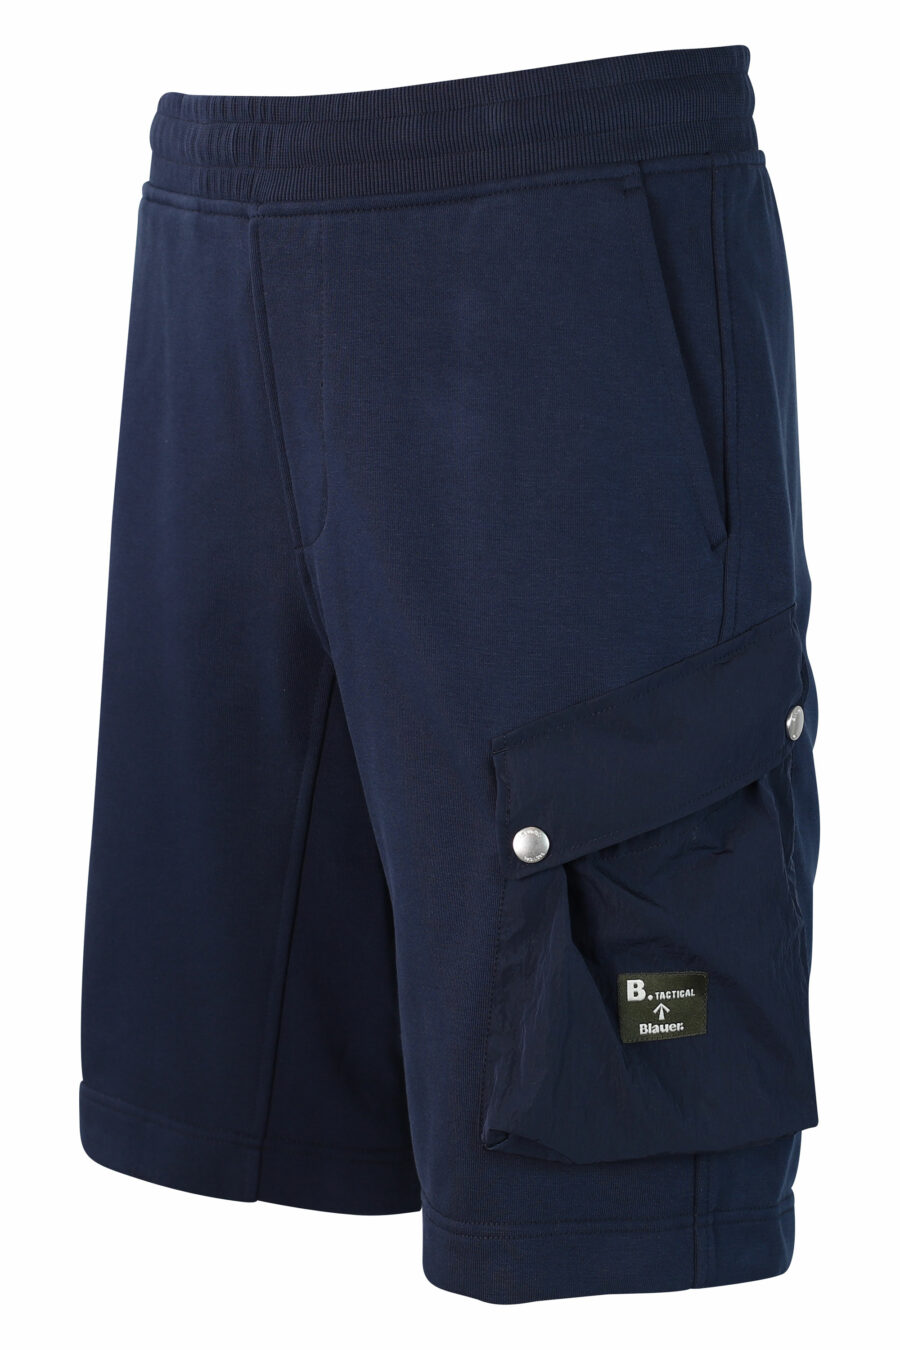 Pantalón de chándal corto azul con bolsillo lateral - IMG 9873 1